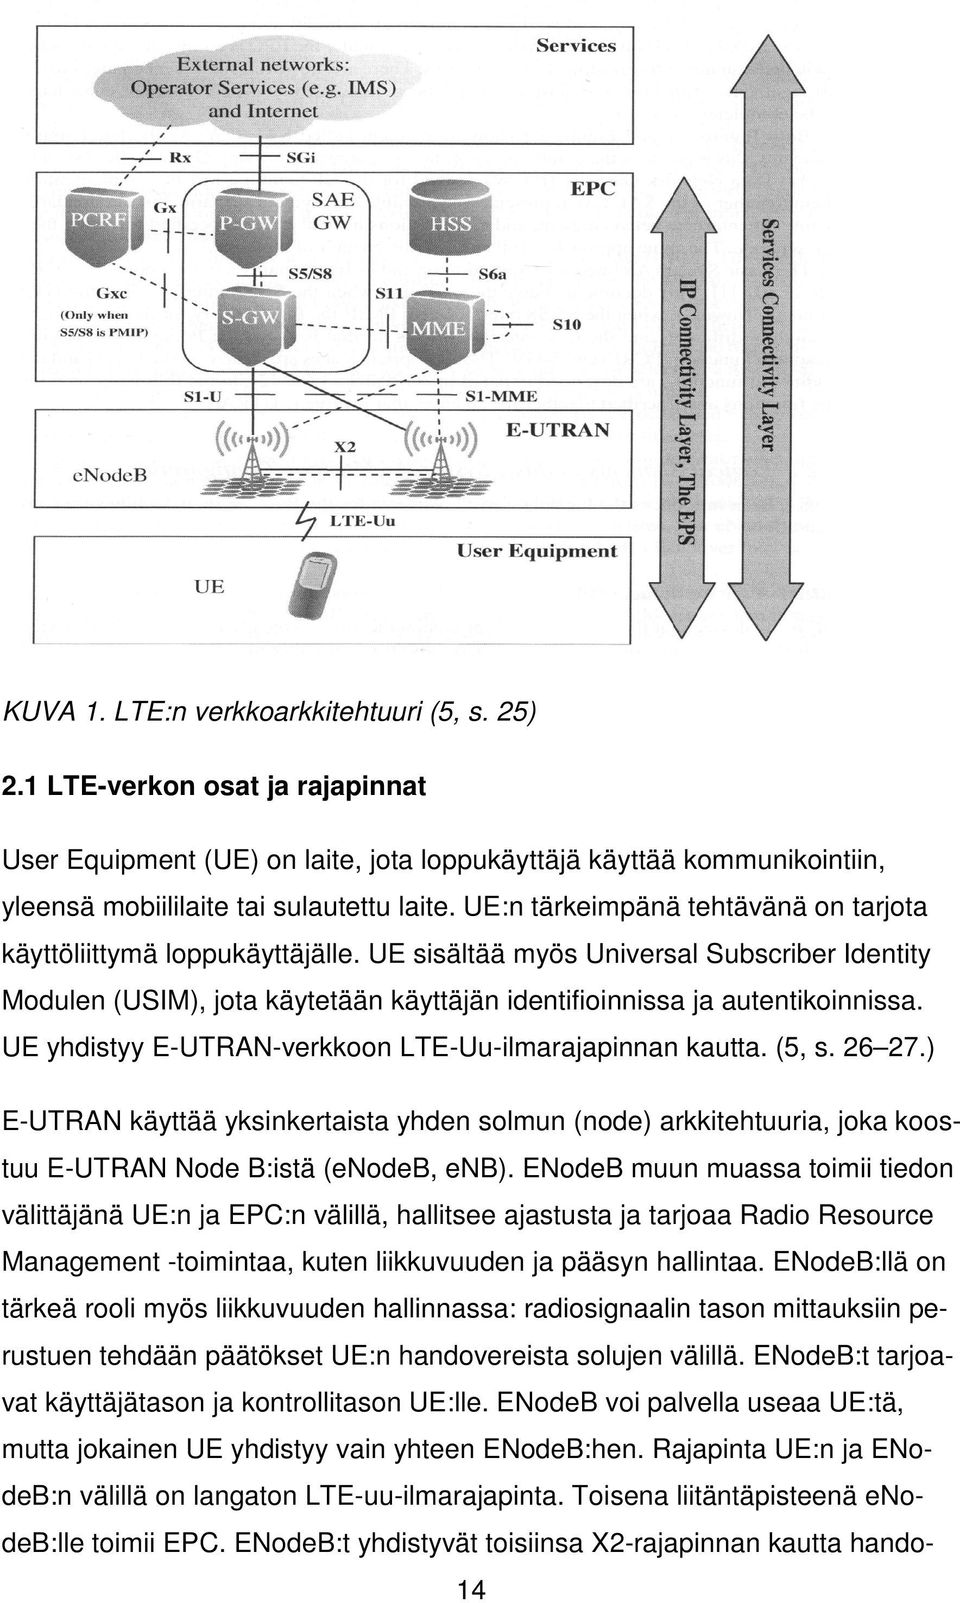 UE yhdistyy E-UTRAN-verkkoon LTE-Uu-ilmarajapinnan kautta. (5, s. 26 27.) E-UTRAN käyttää yksinkertaista yhden solmun (node) arkkitehtuuria, joka koostuu E-UTRAN Node B:istä (enodeb, enb).